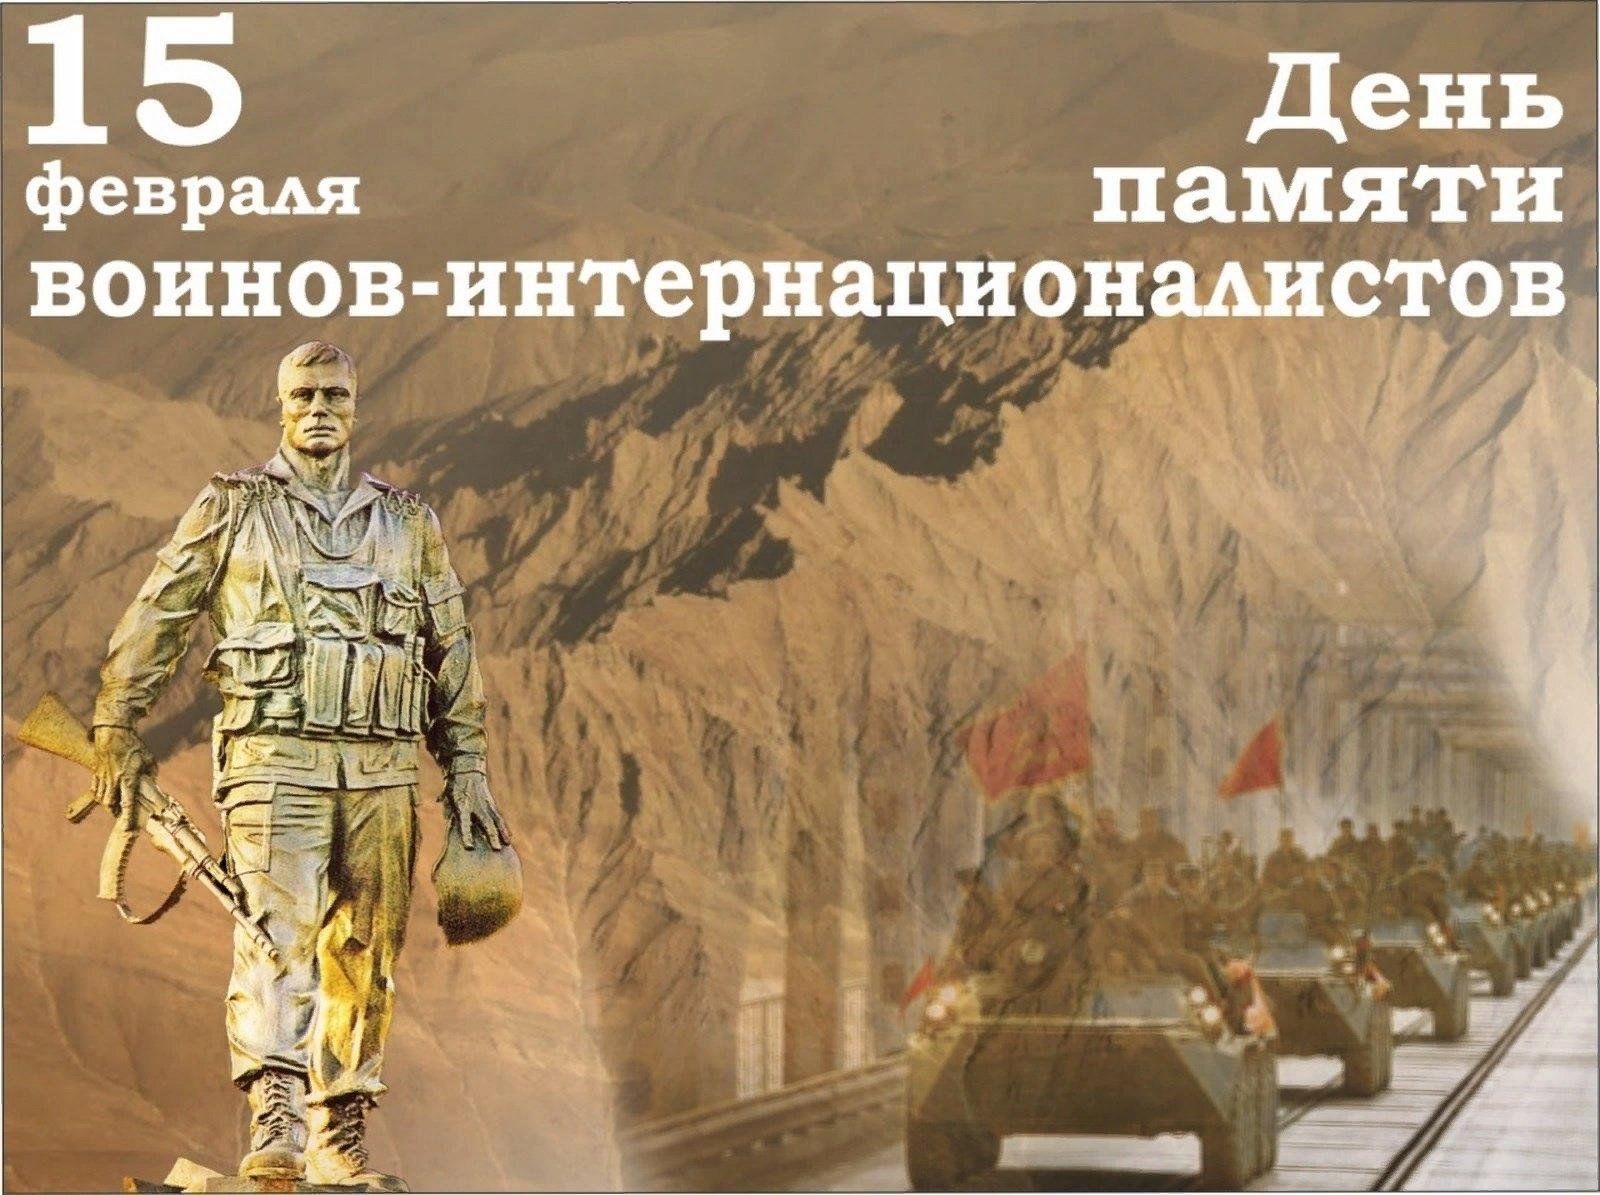 35 годовщина вывода советских. 15 Февраля день памяти воинов-интернационалистов Афганистан. Память воинам интернационалистам в Афганистане. День памяти воинов-интернационалистов 15 февраля 1989. День воина интернационалиста Афганистан.